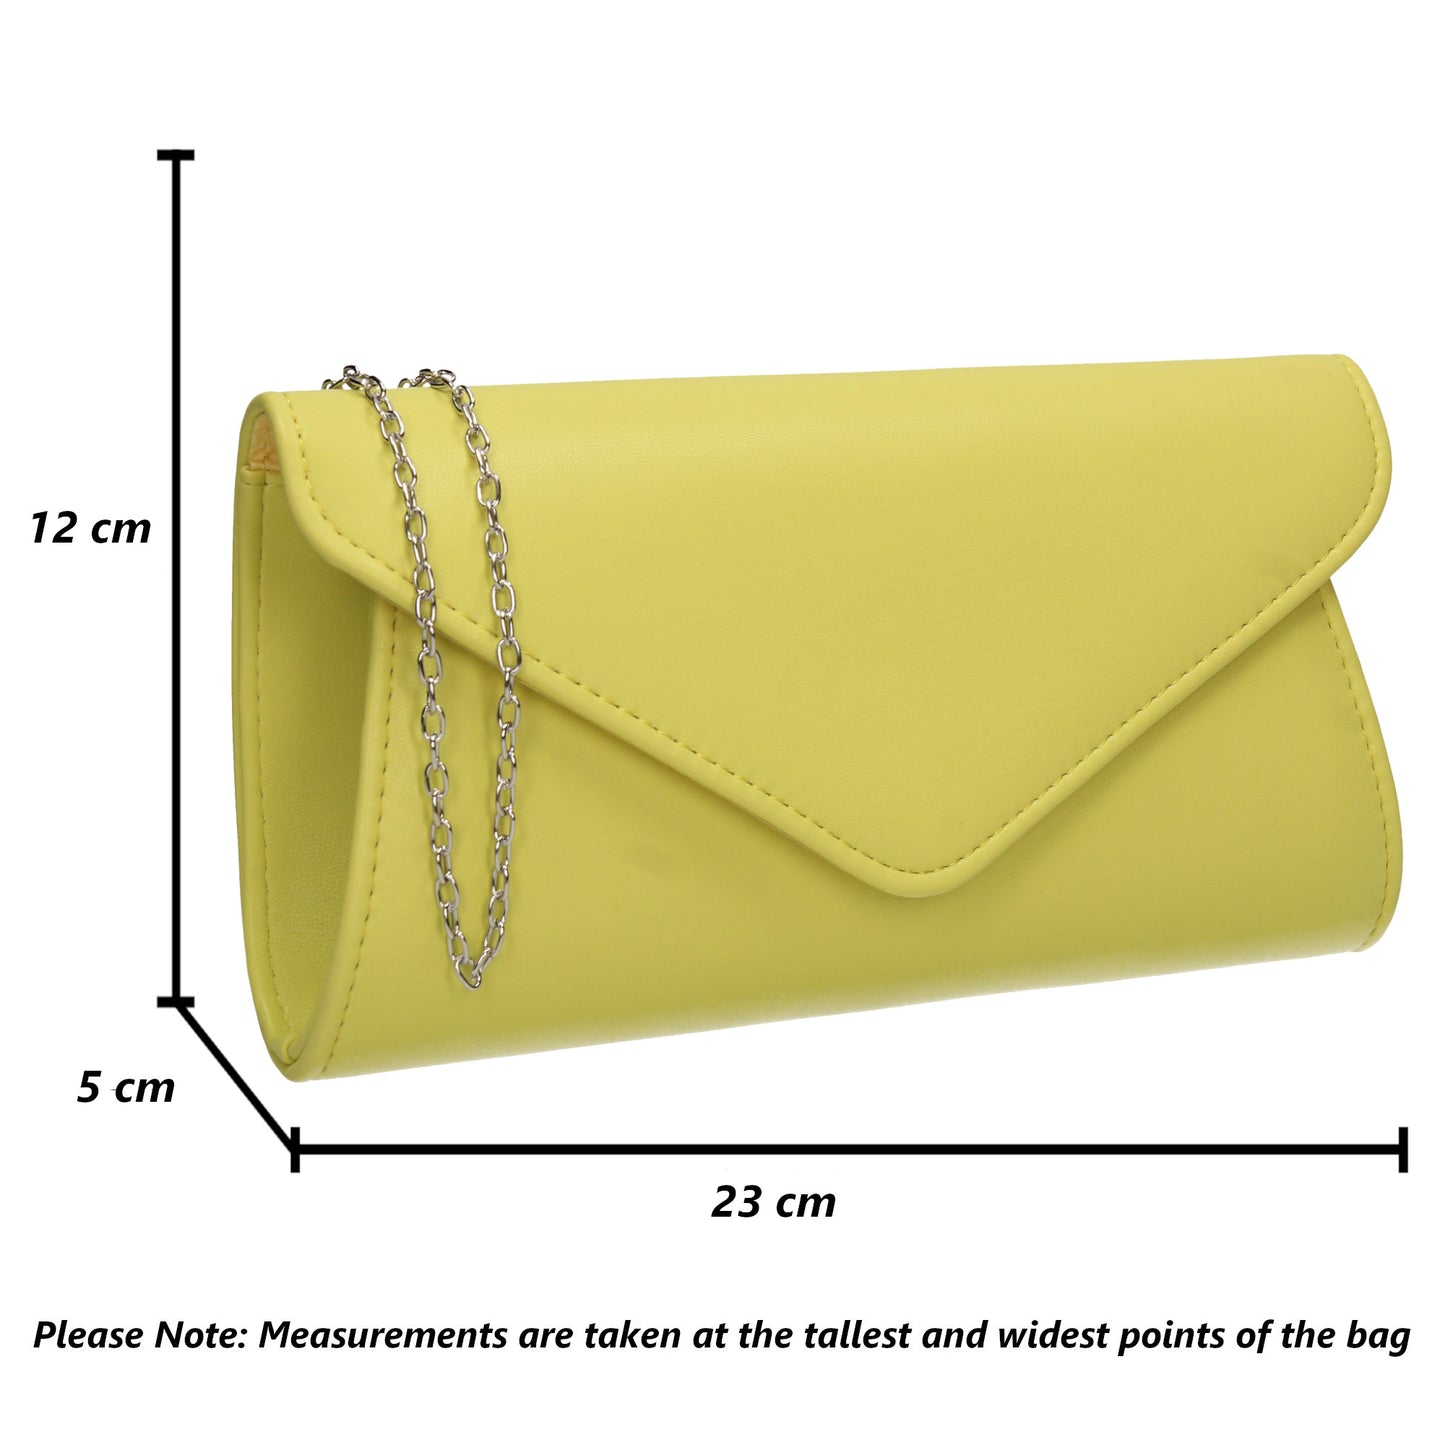 Lora Plain Envelope Clutch Bag Lemon Yellow